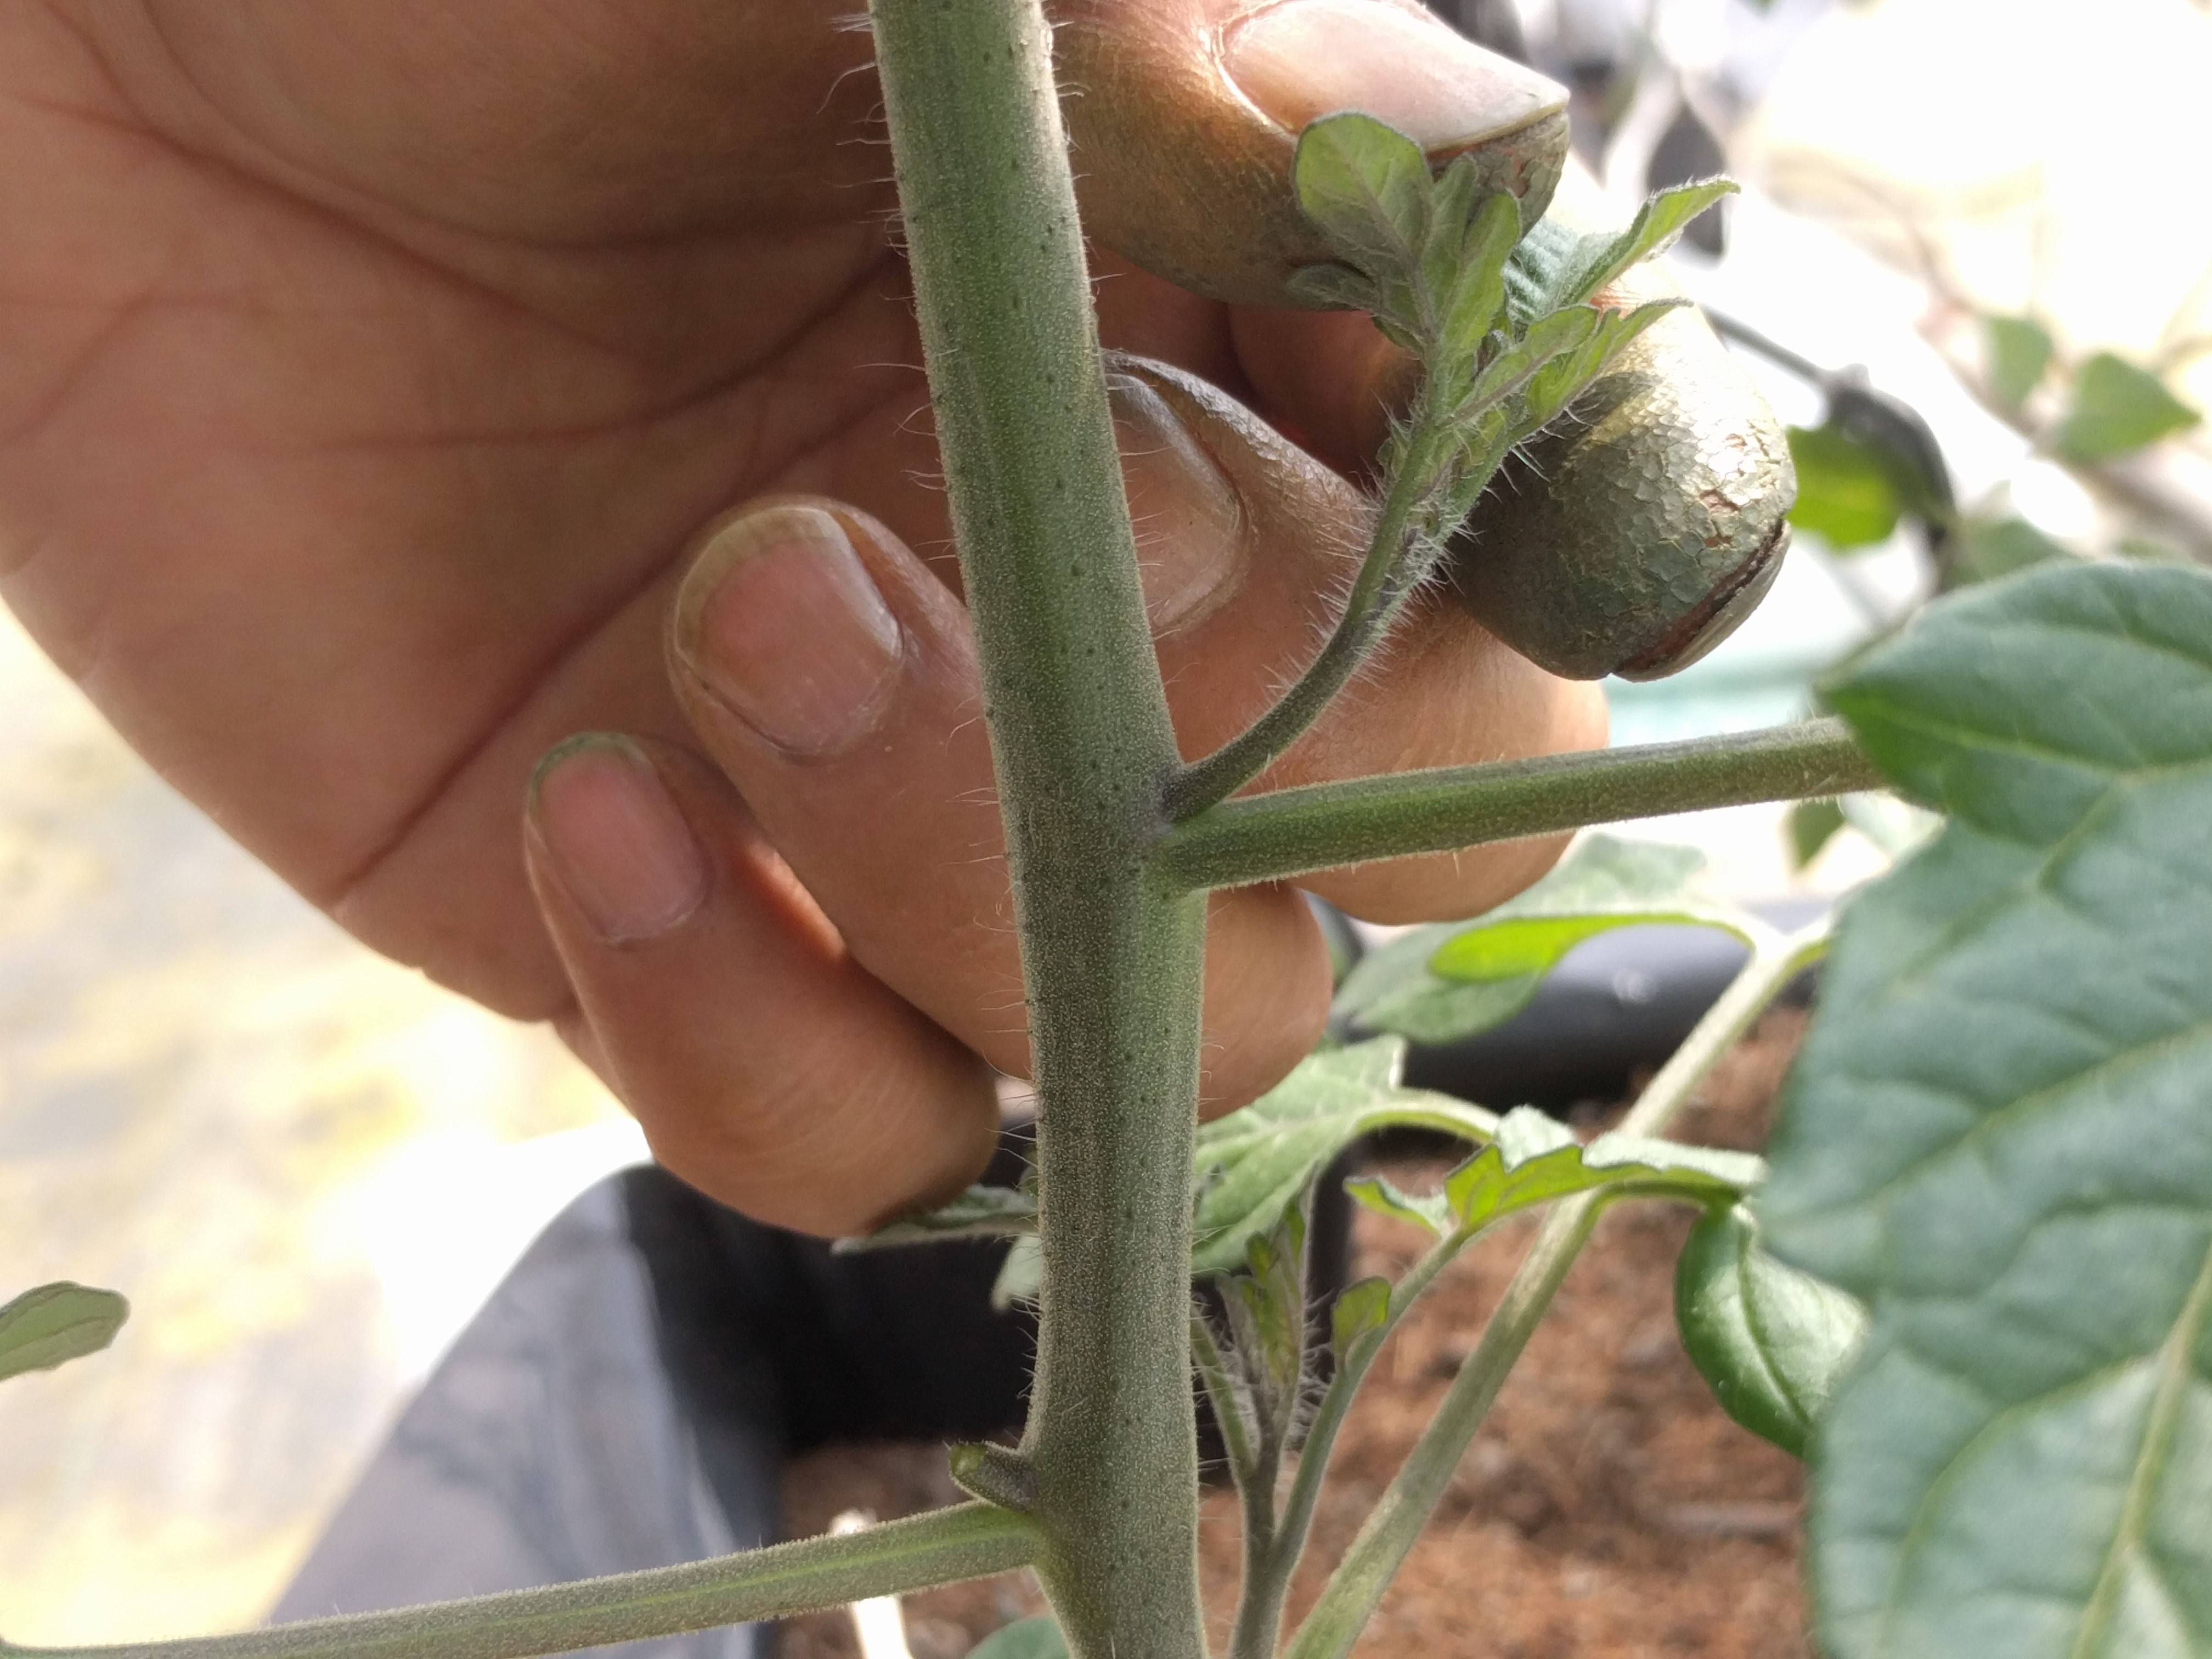 ミニトマトの育て方 わき芽見分け方 と わき芽かき 定植3週間後のトマトの様子 モンドトマトファームhp 高糖度ミニトマトを通販でお届け